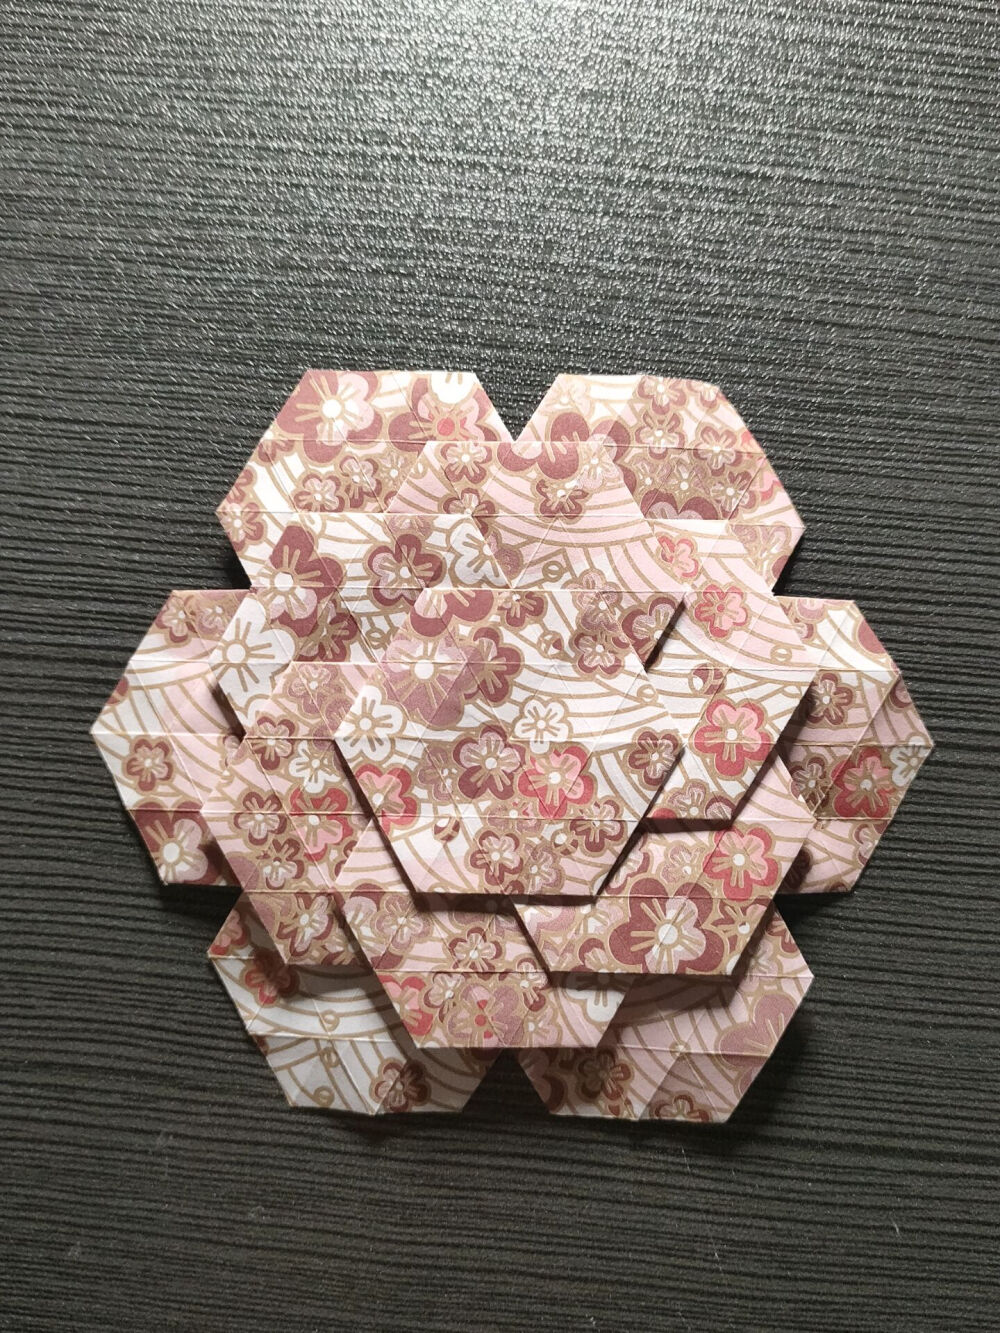 折纸镶嵌